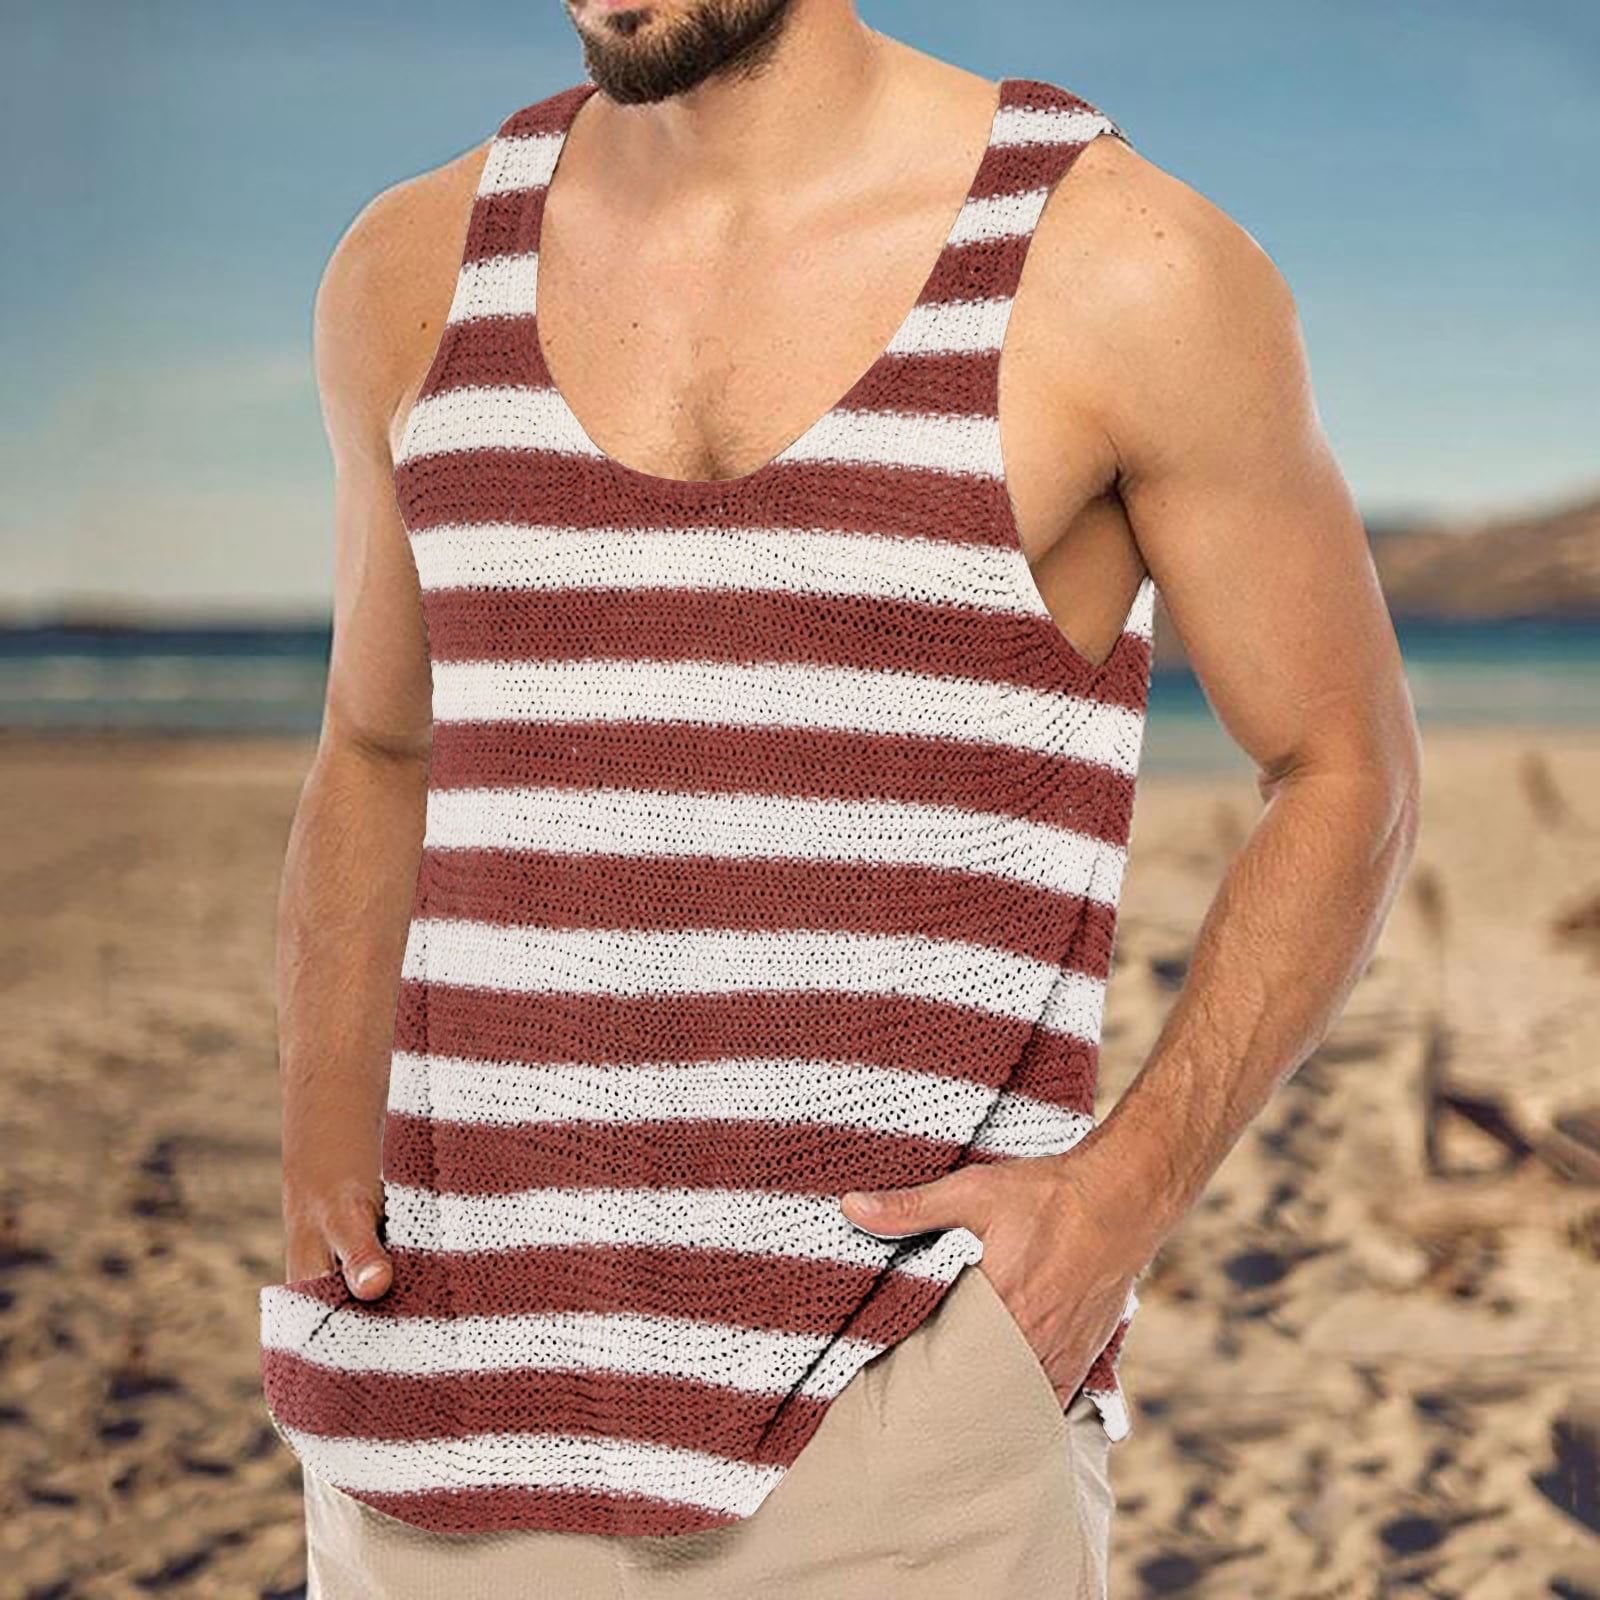 VKEKIEO Men's Summer Knit Striped Vest Slim Knit Sweater Tank Tops